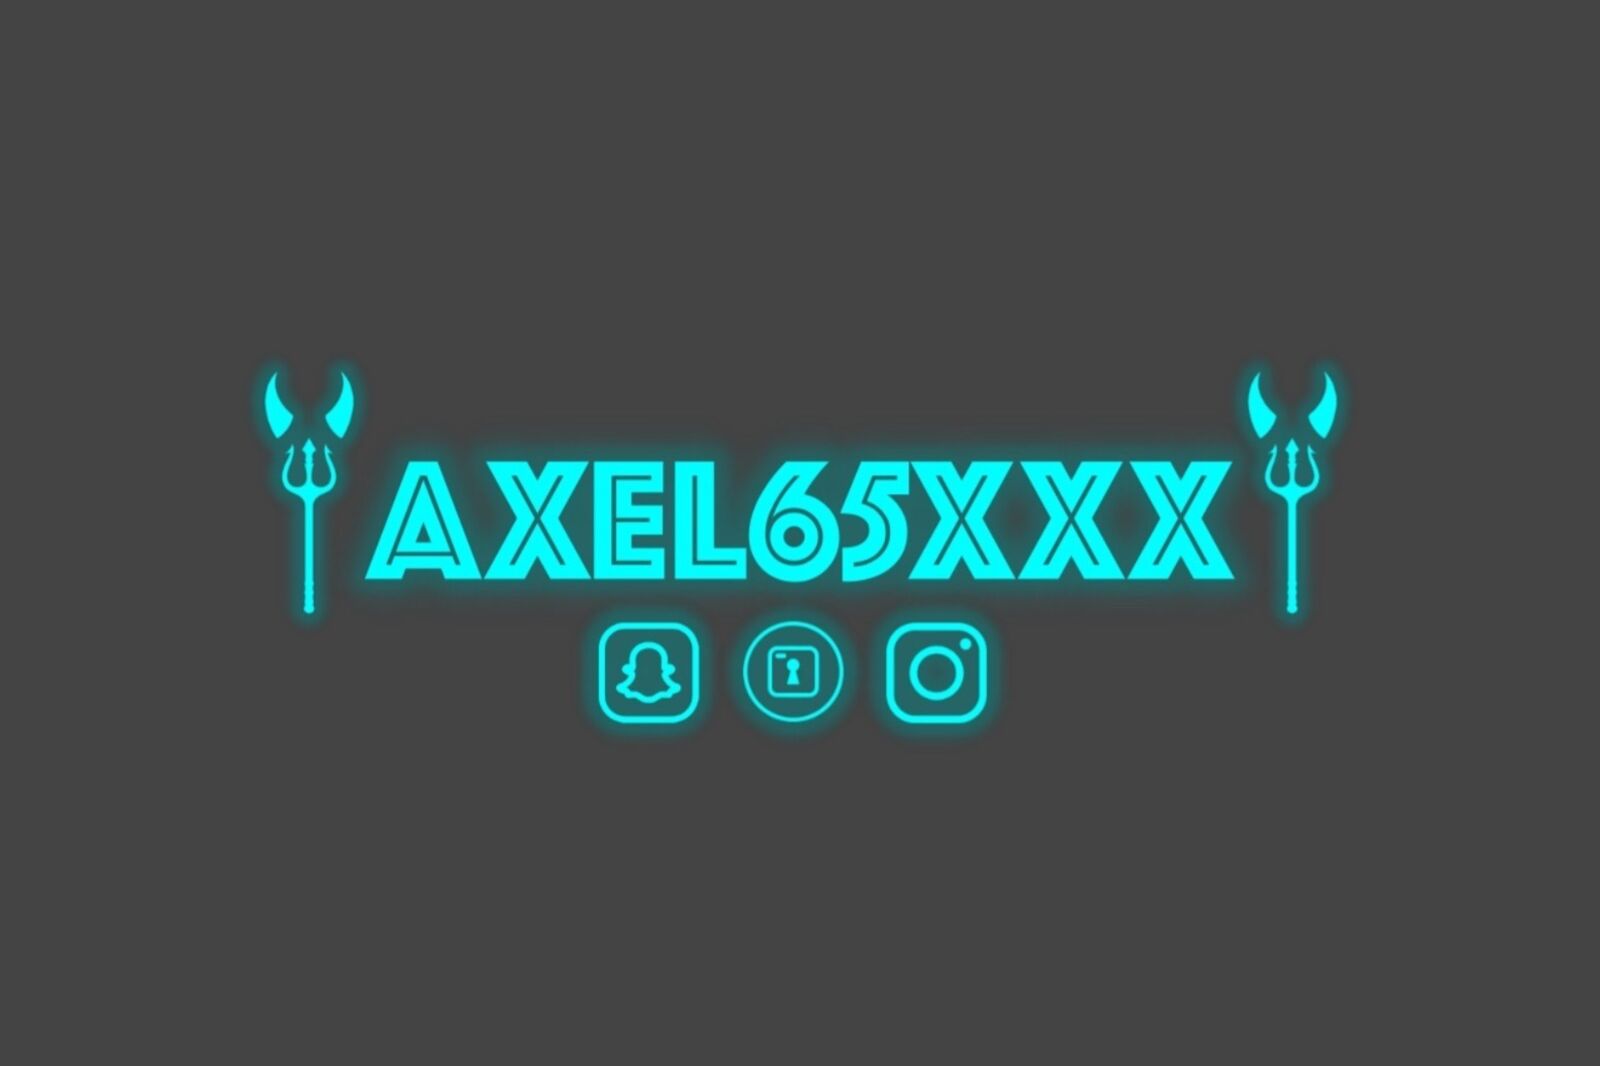 See Axel65xxx profile